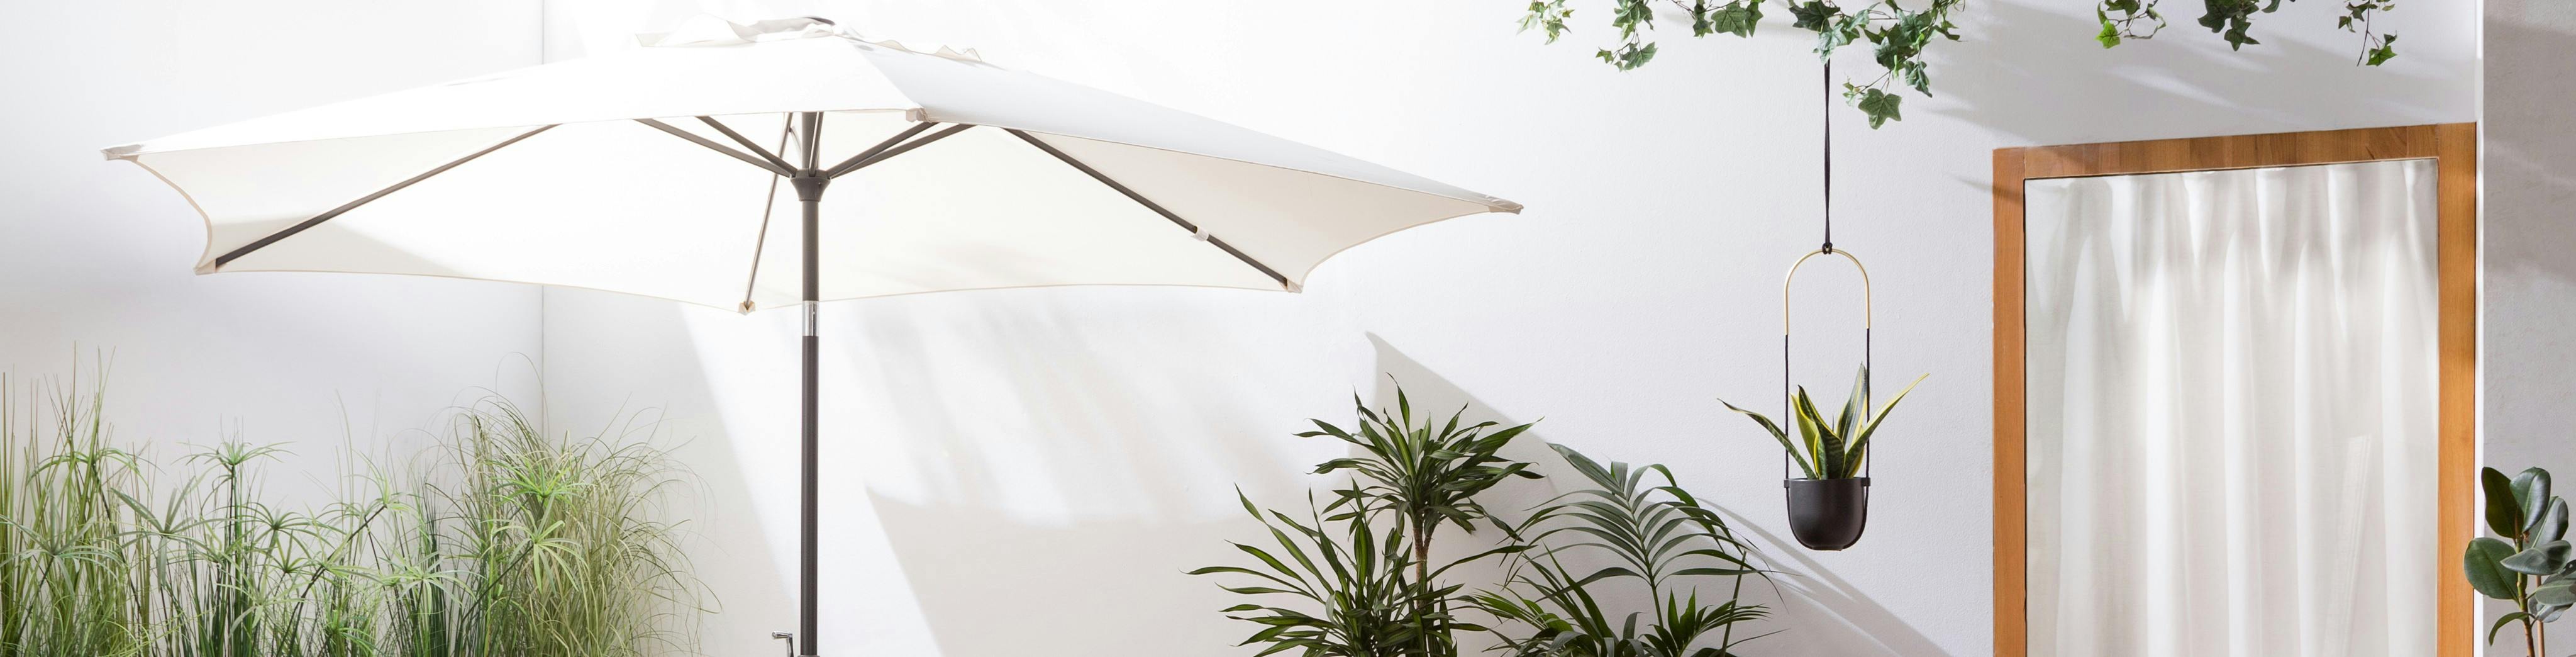 Weißer Sonnenschirm im Detail auf einer Terrasse mit Pflanzen